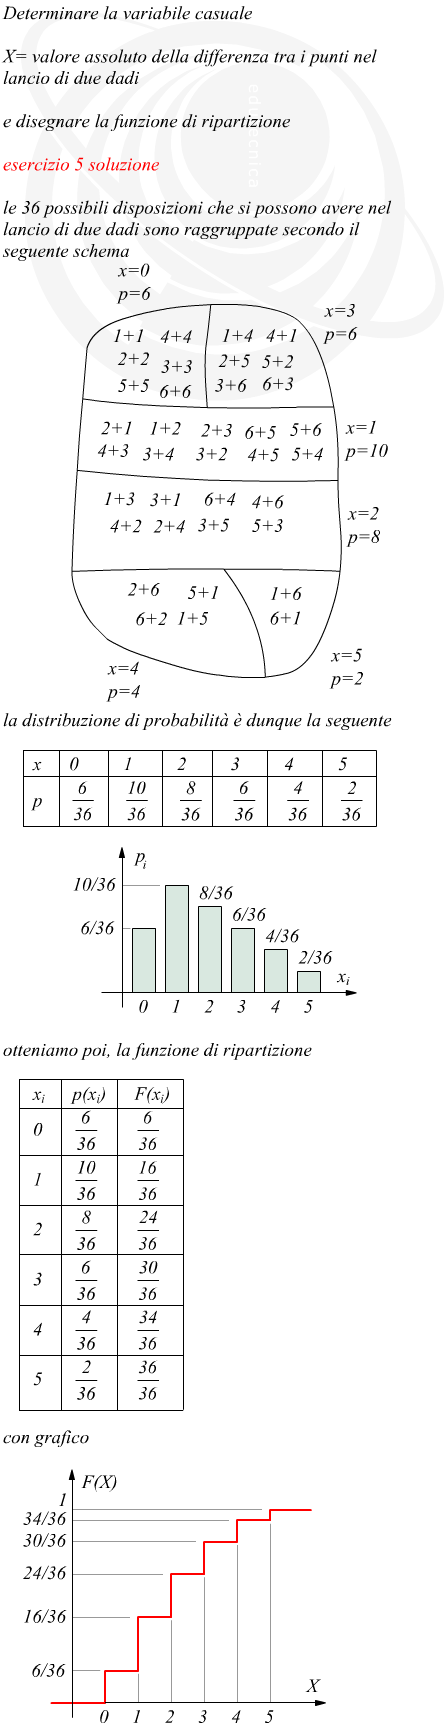 Distribuzione di probabilit e funzione di ripartizione sul lancio di due dadi